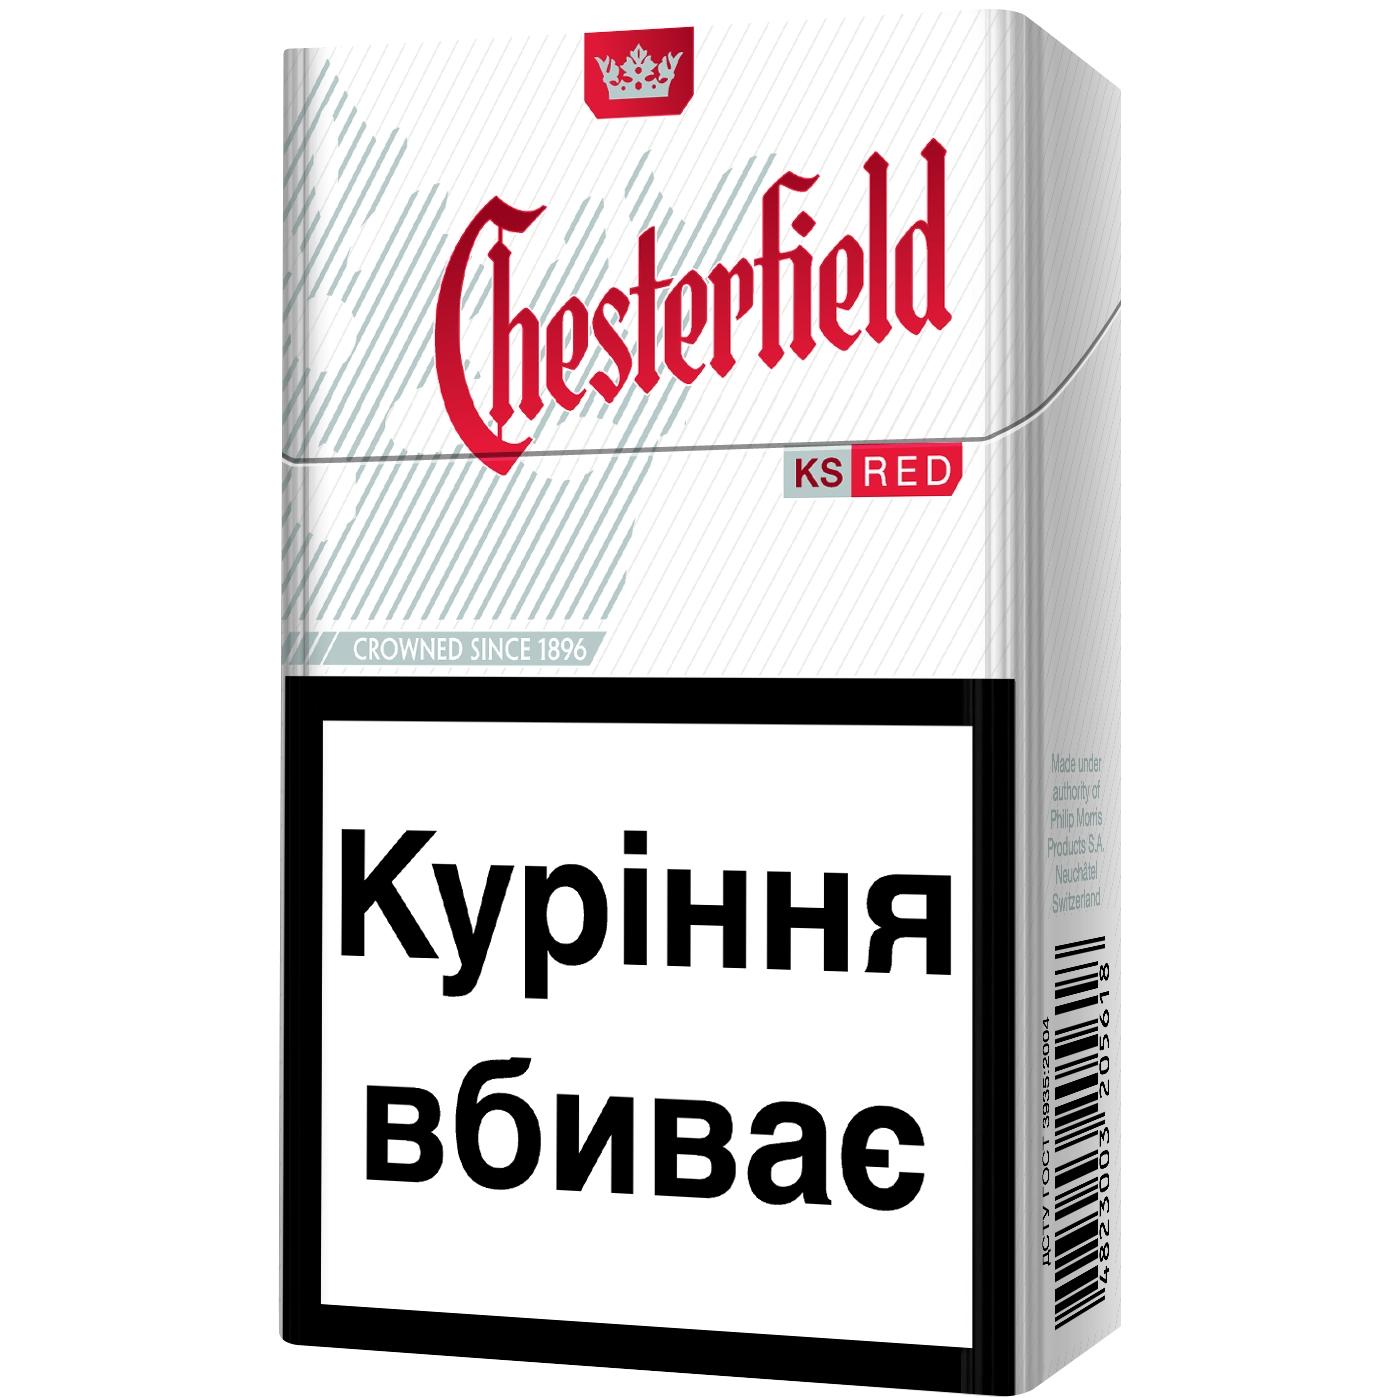 Честер шоколад сигареты. Честер красный сигареты. Честерфилд сигареты красные. Сигареты Честерфилд ред. Chesterfield сигареты микс.